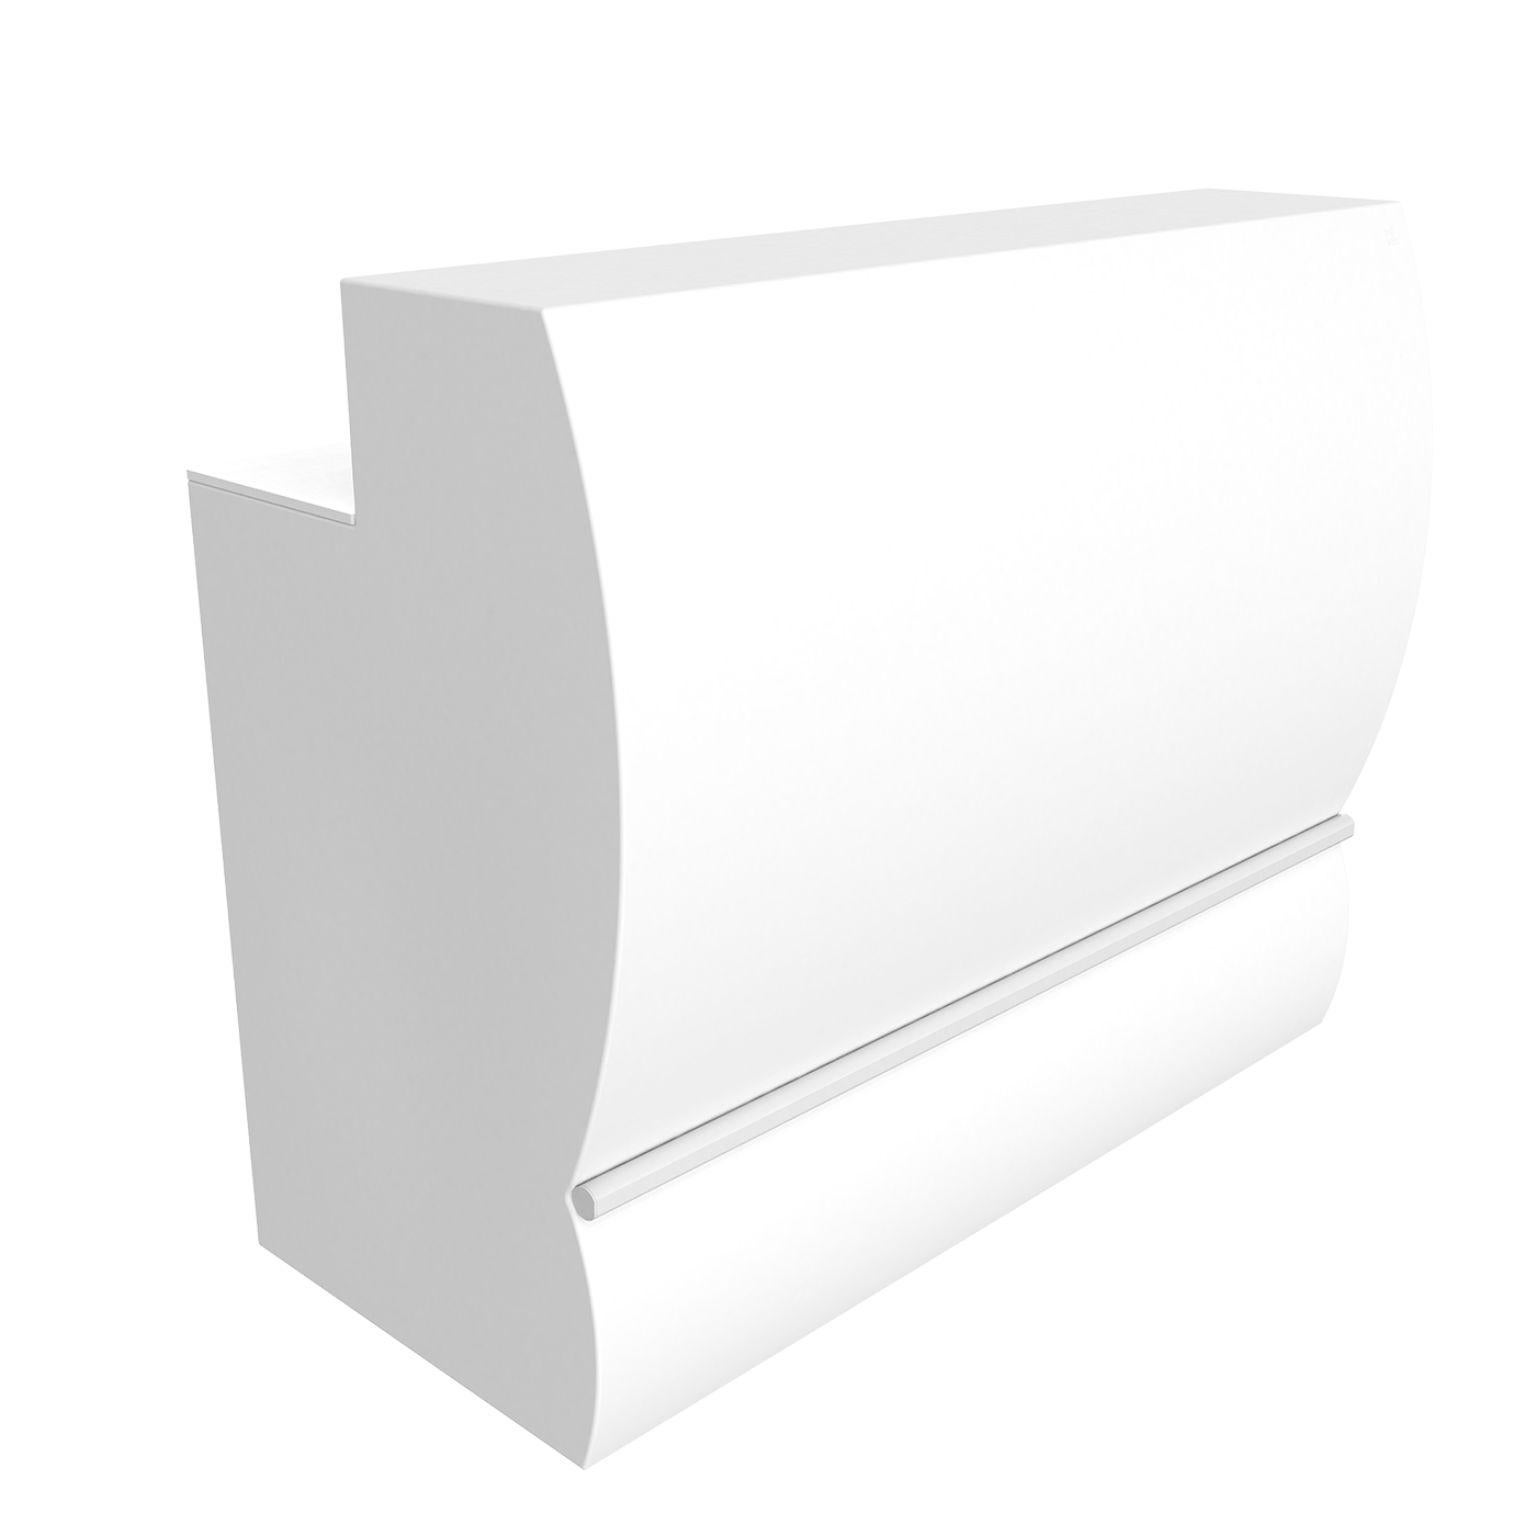 Weißer gerader Spitzenstab von MOWEE
Abmessungen: T68 x B140 x H115 cm.
MATERIAL: Polyethylen und rostfreier Stahl.
Gewicht: 45 kg.
Auch in verschiedenen Farben und Ausführungen (lackiert, nachträglich beleuchtet) erhältlich. Optionaler Radsatz